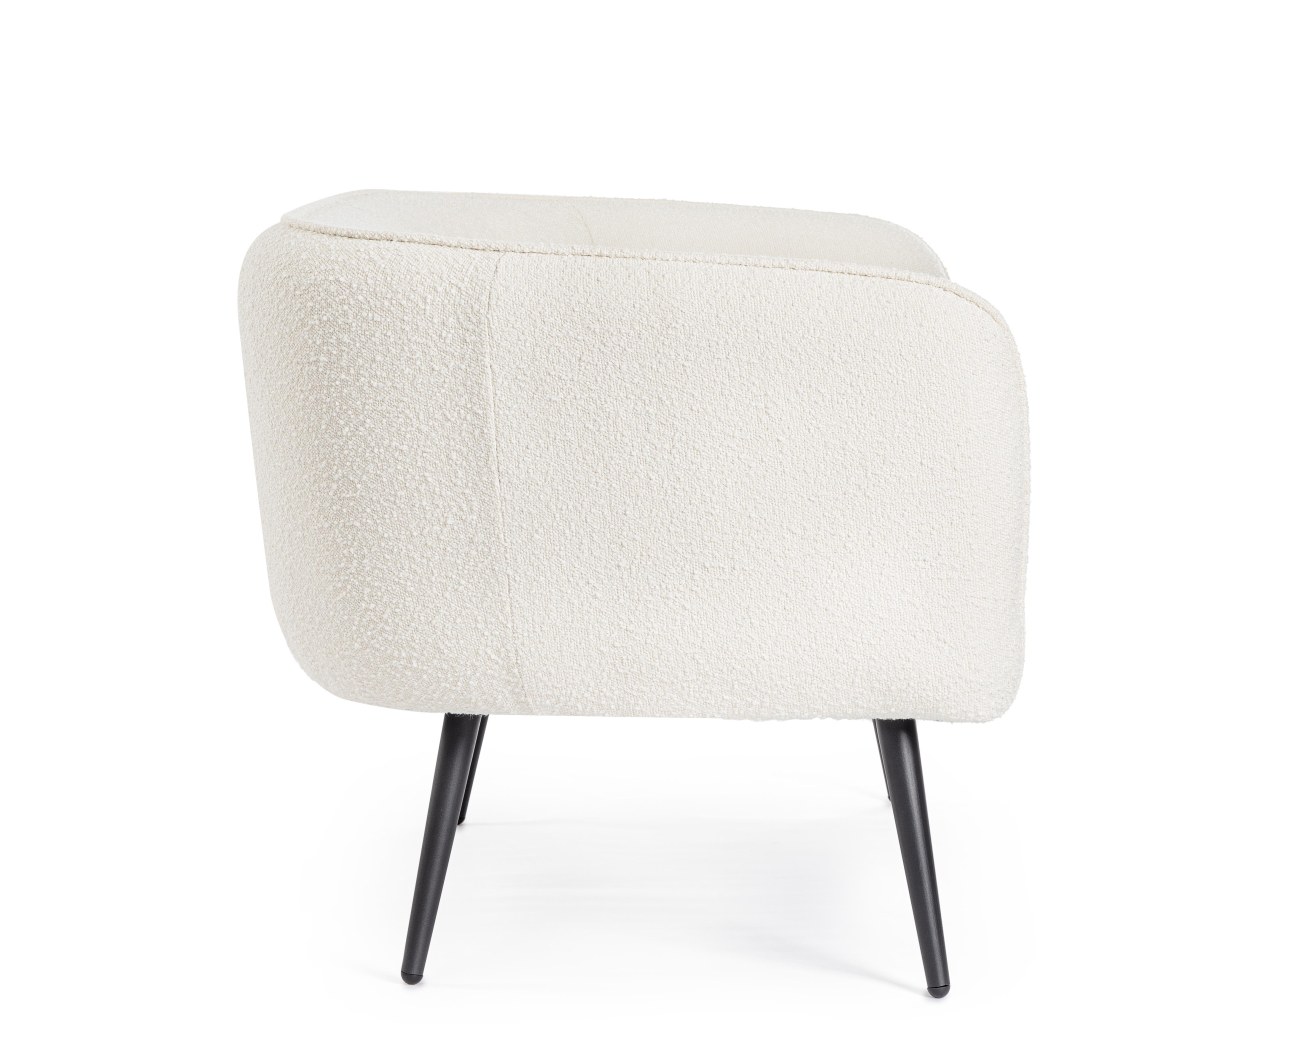 Das Sofa Avril überzeugt mit seinem modernen Stil. Gefertigt wurde es aus Bouclè-Stoff, welcher einen weißen Farbton besitzt. Das Gestell ist aus Metall und hat eine schwarze Farbe. Das Sofa ist in der Ausführung 2-Sitzer.